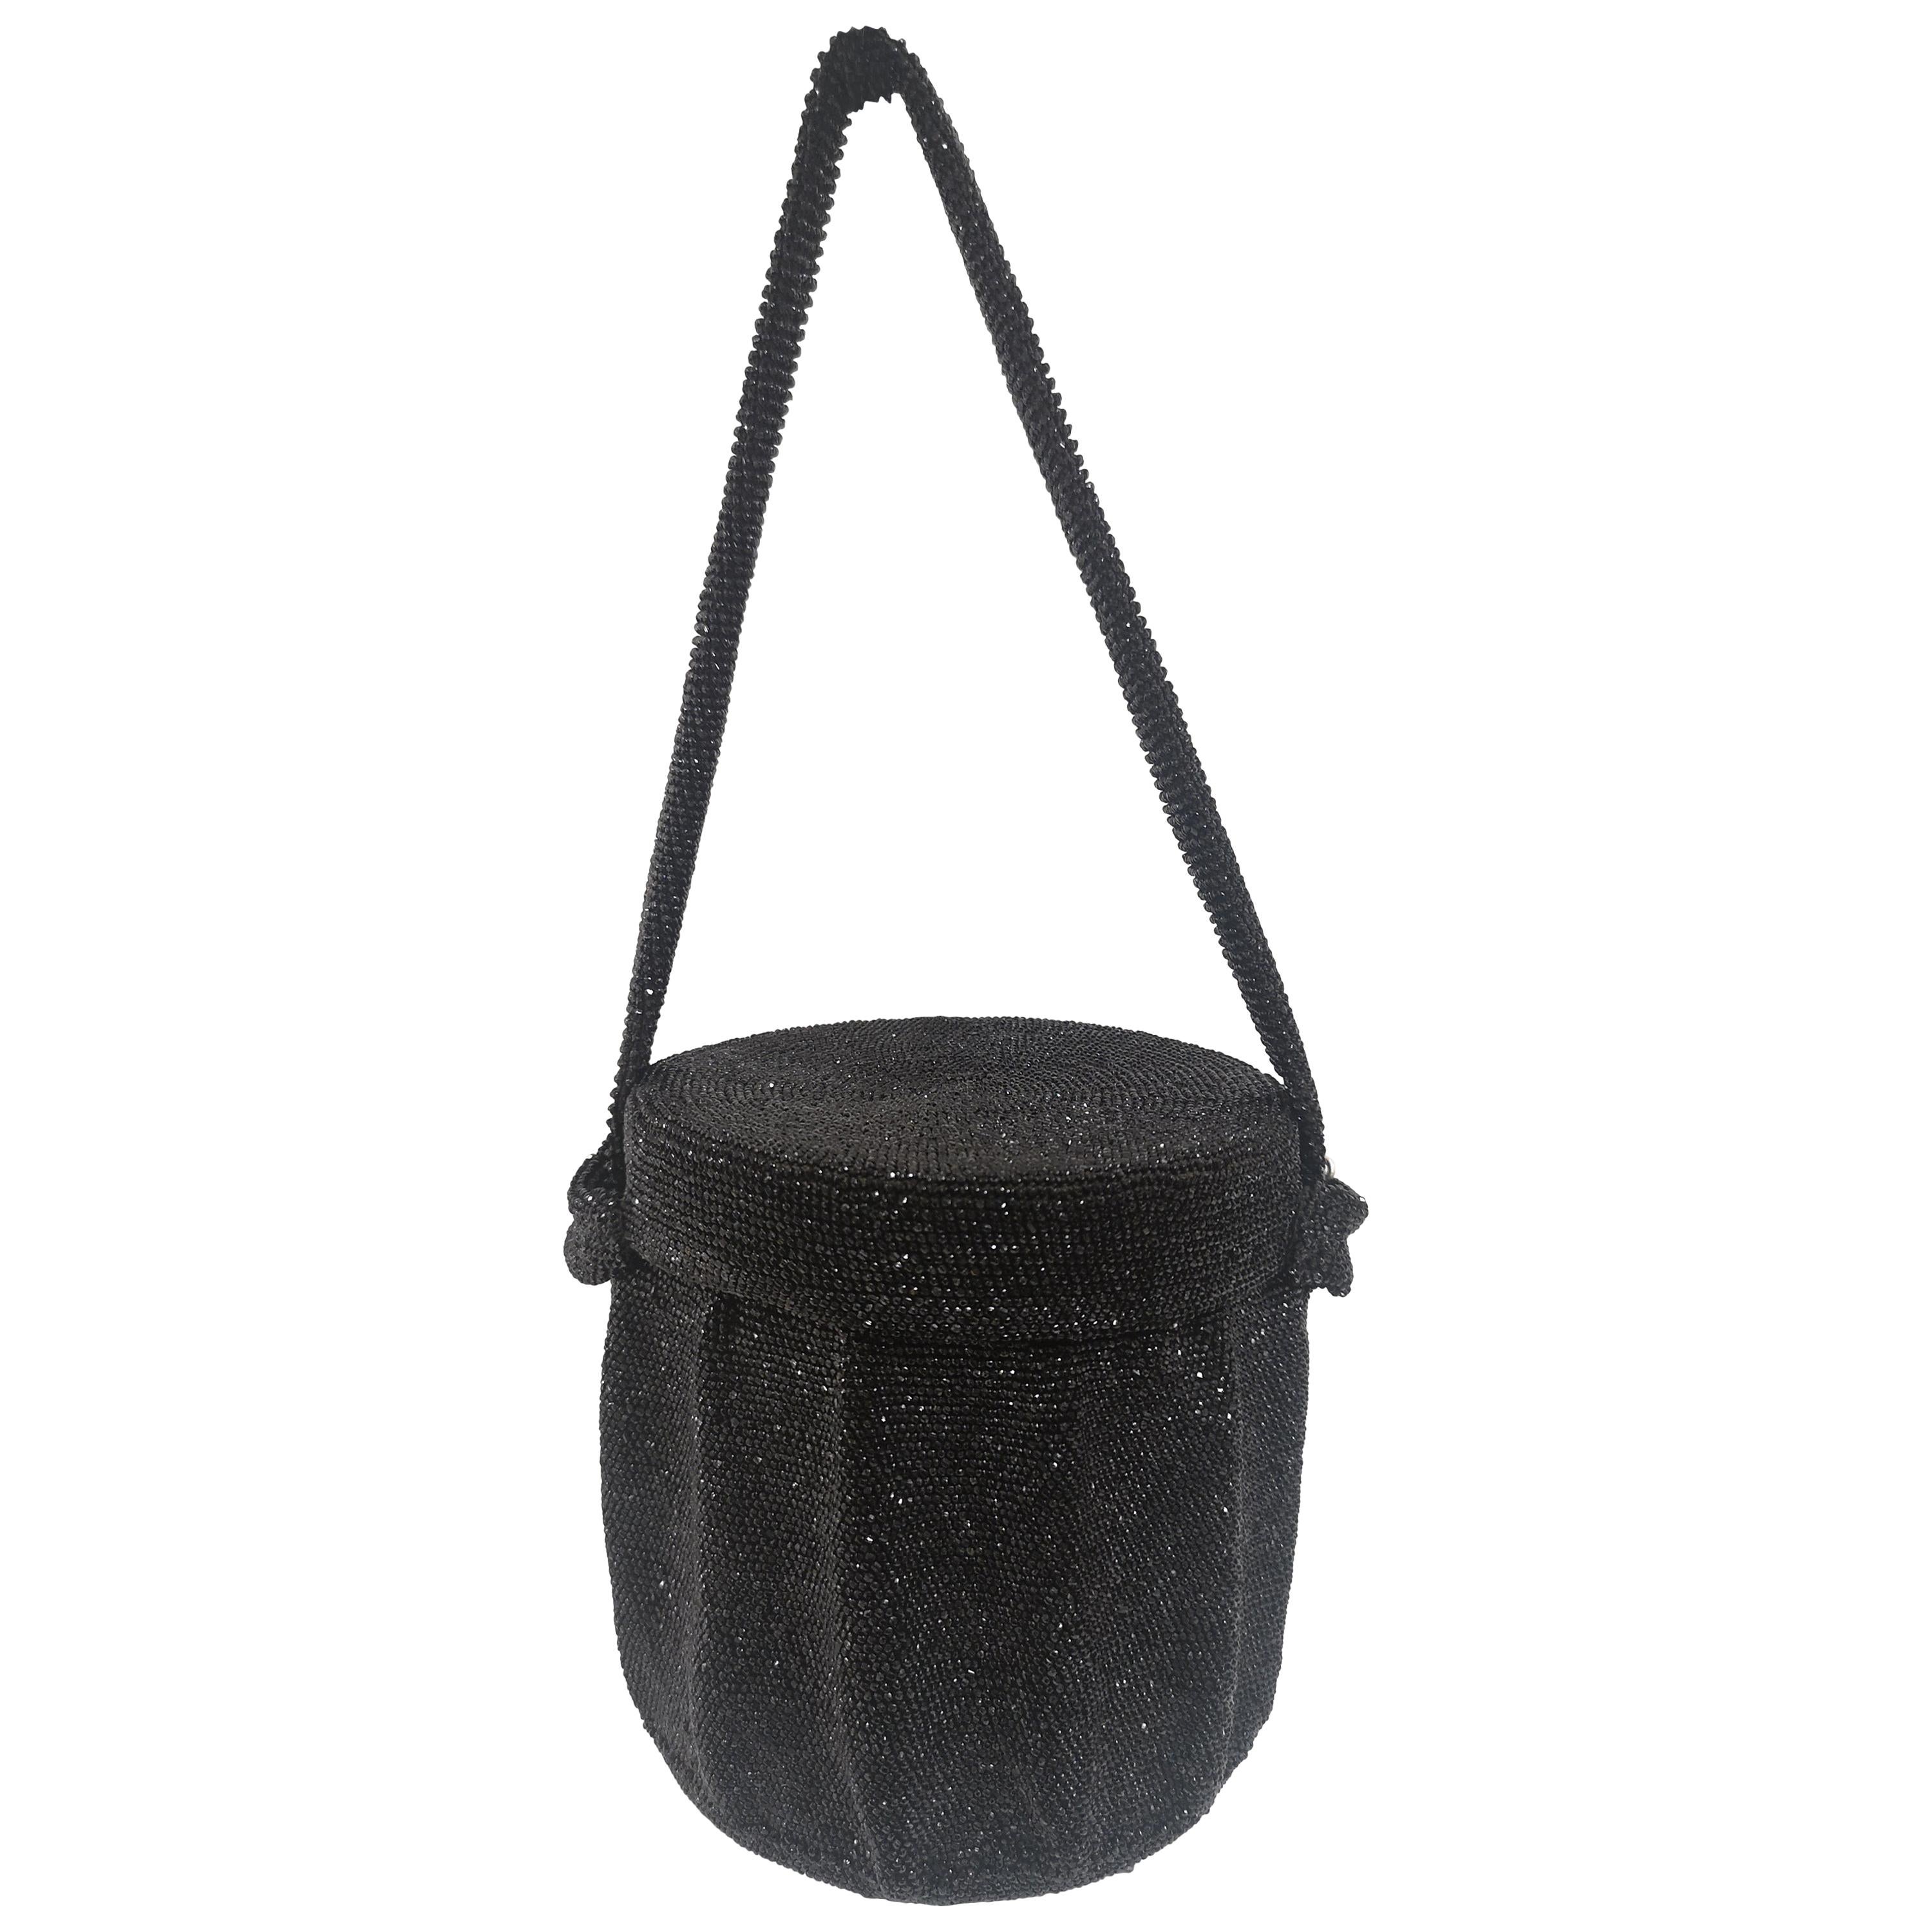 1980s Black beads satchel